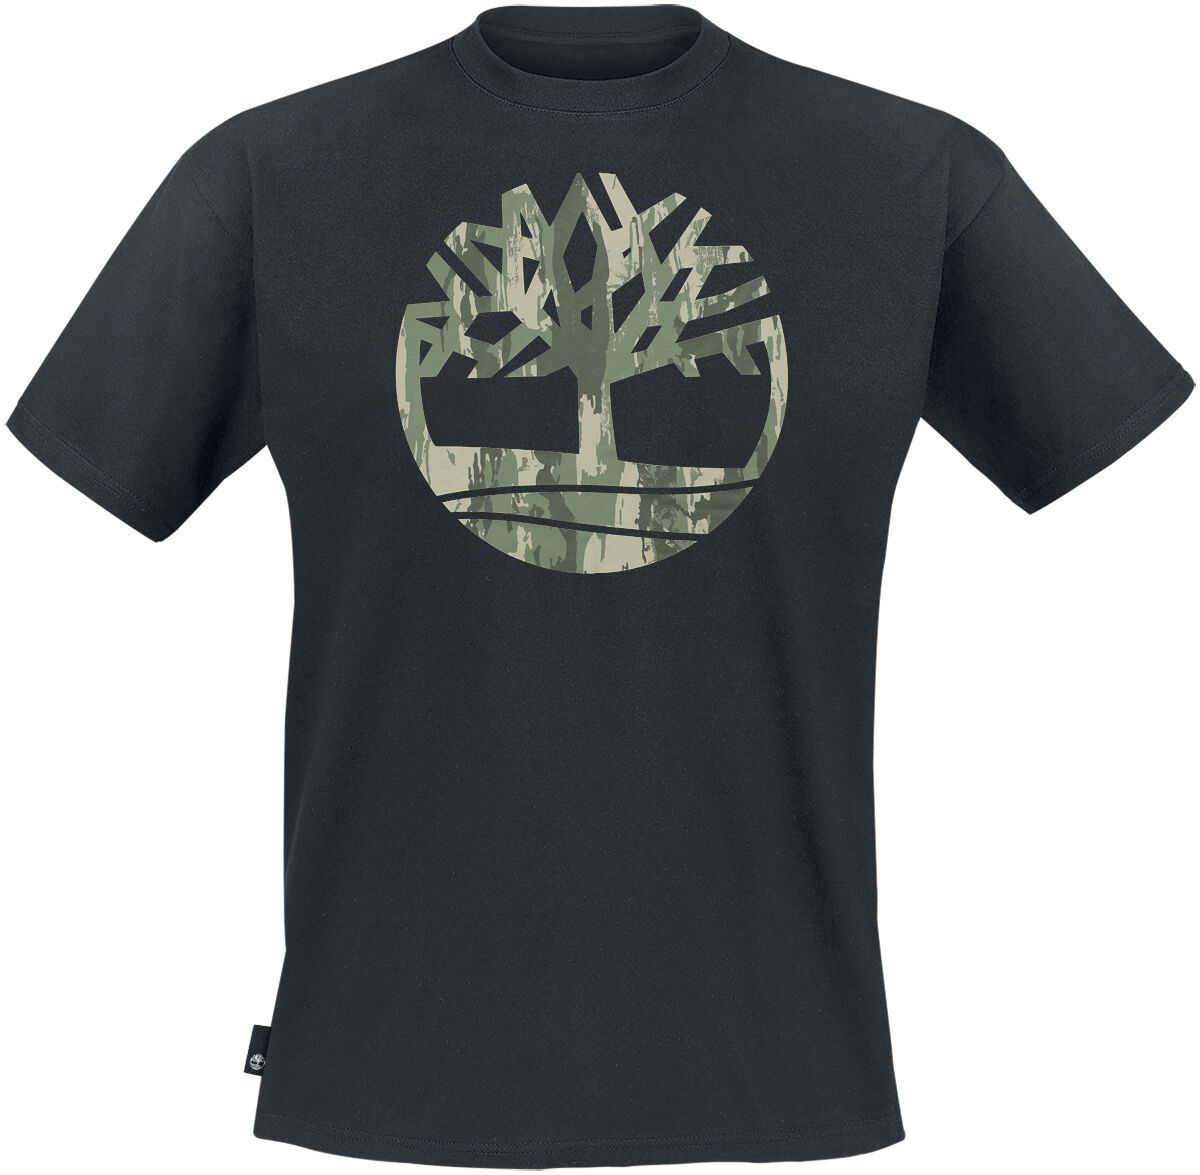 Timberland T-Shirt - Kennebec River Camo Tree Logo Short Sleeve Tee - S bis XXL - für Männer - Größe XXL - schwarz